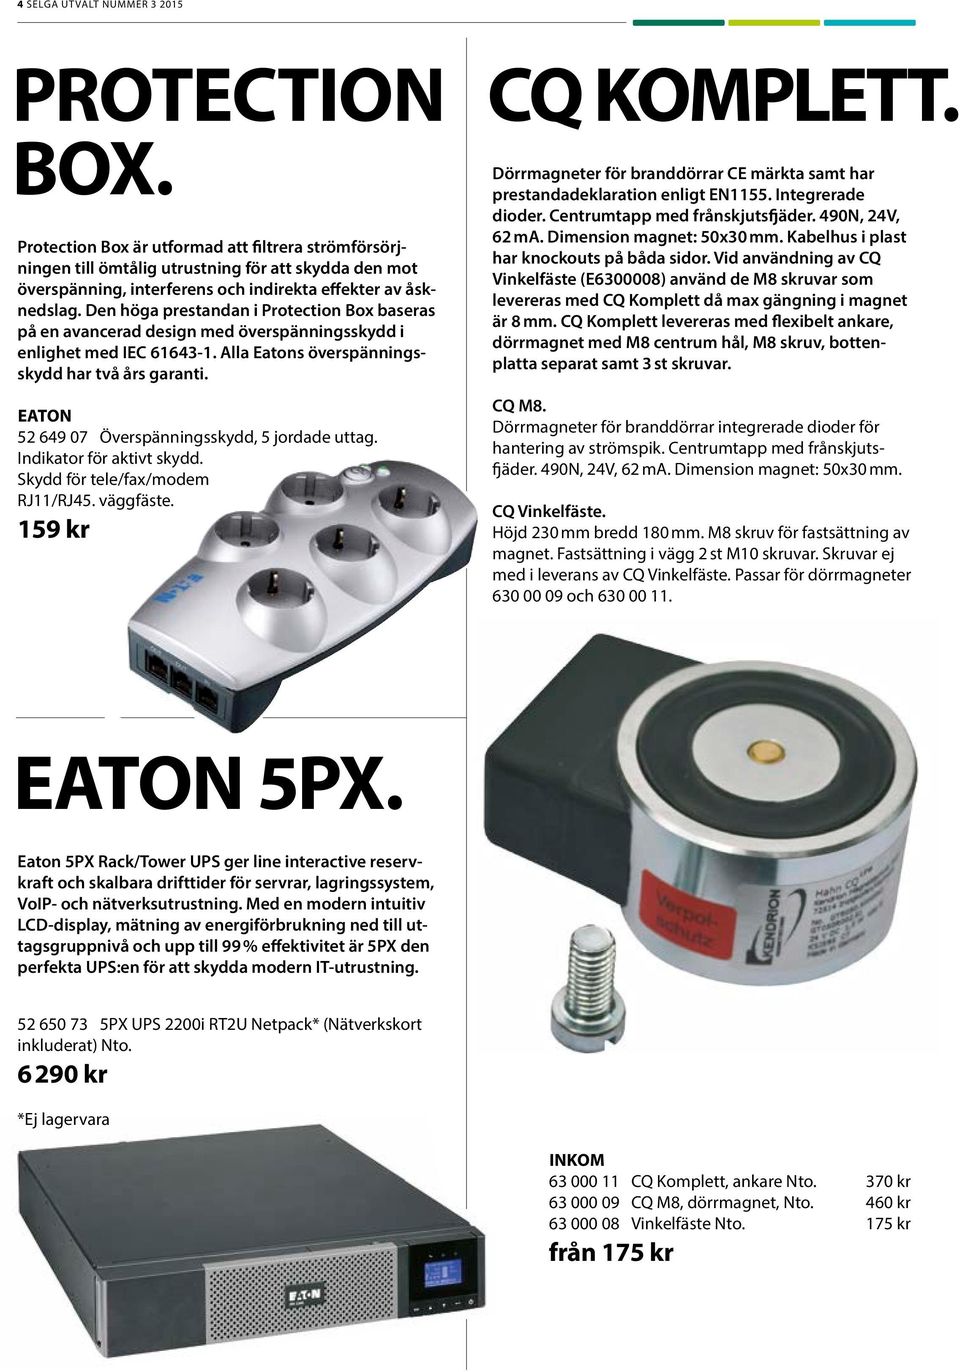 Den höga prestandan i Protection Box baseras på en avancerad design med överspänningsskydd i enlighet med IEC 61643-1. Alla Eatons överspänningsskydd har två års garanti.